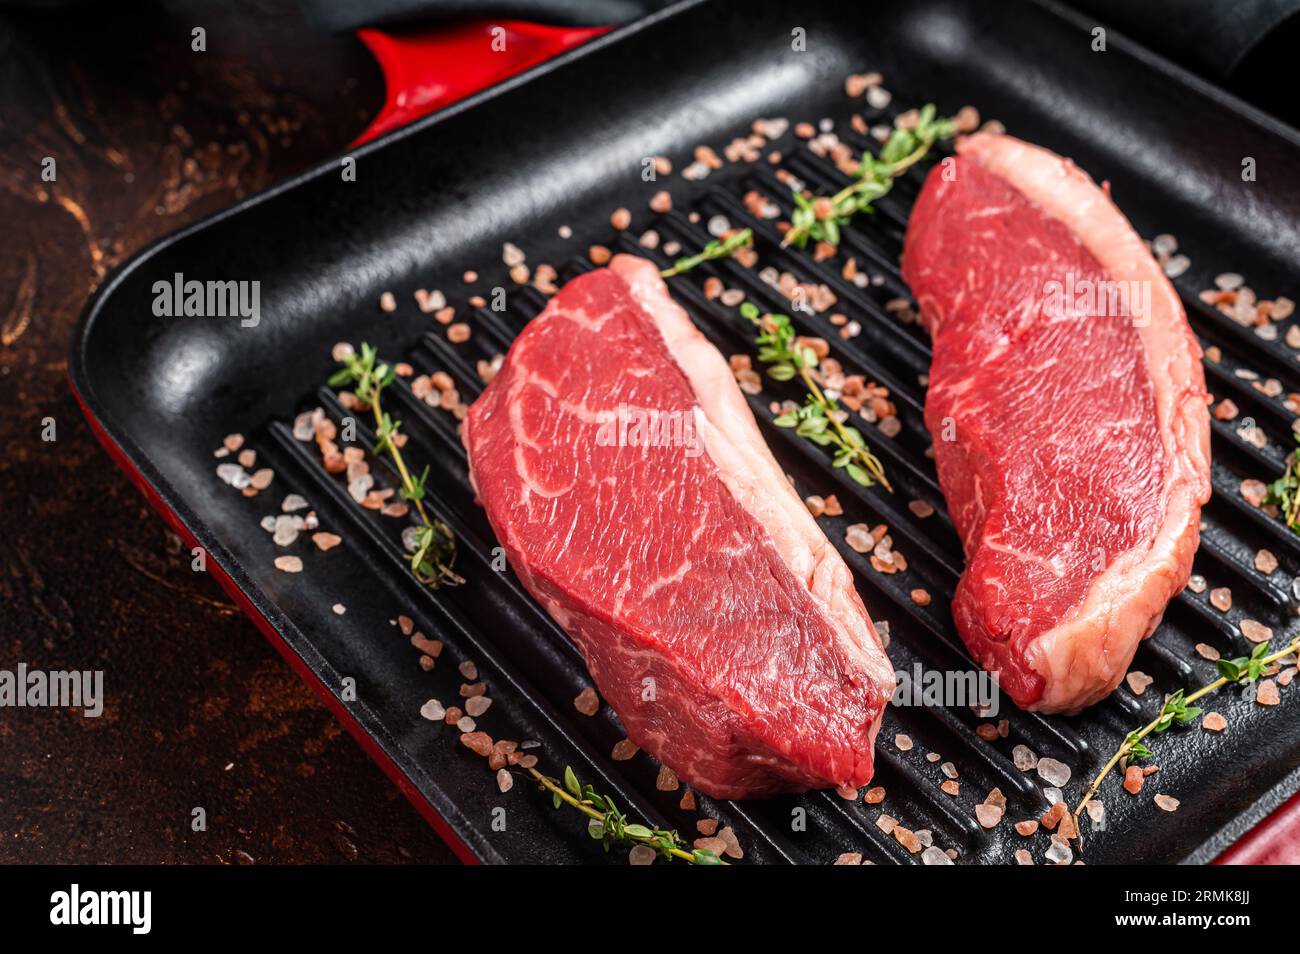 Steak de croupe de chapeau cru, viande de bœuf marbrée sur une poêle à griller. Arrière-plan sombre. Vue de dessus. Banque D'Images